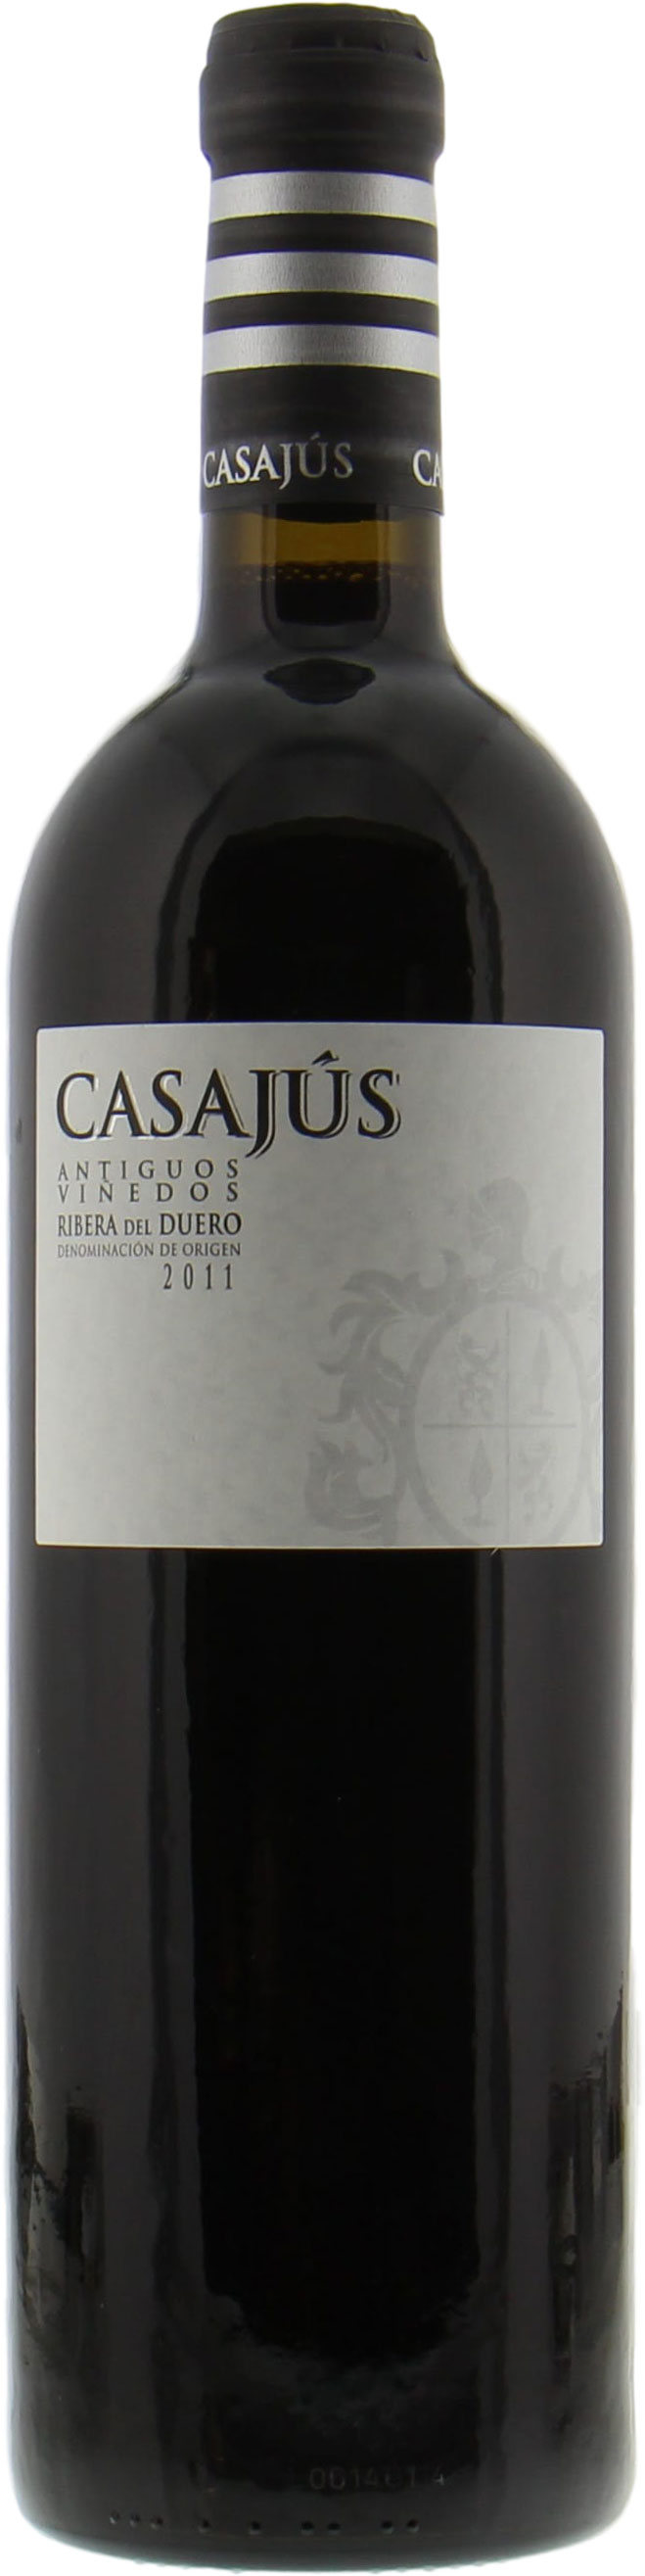 Bodegas Calvo Casajus - Antiguos Vinedos 2011